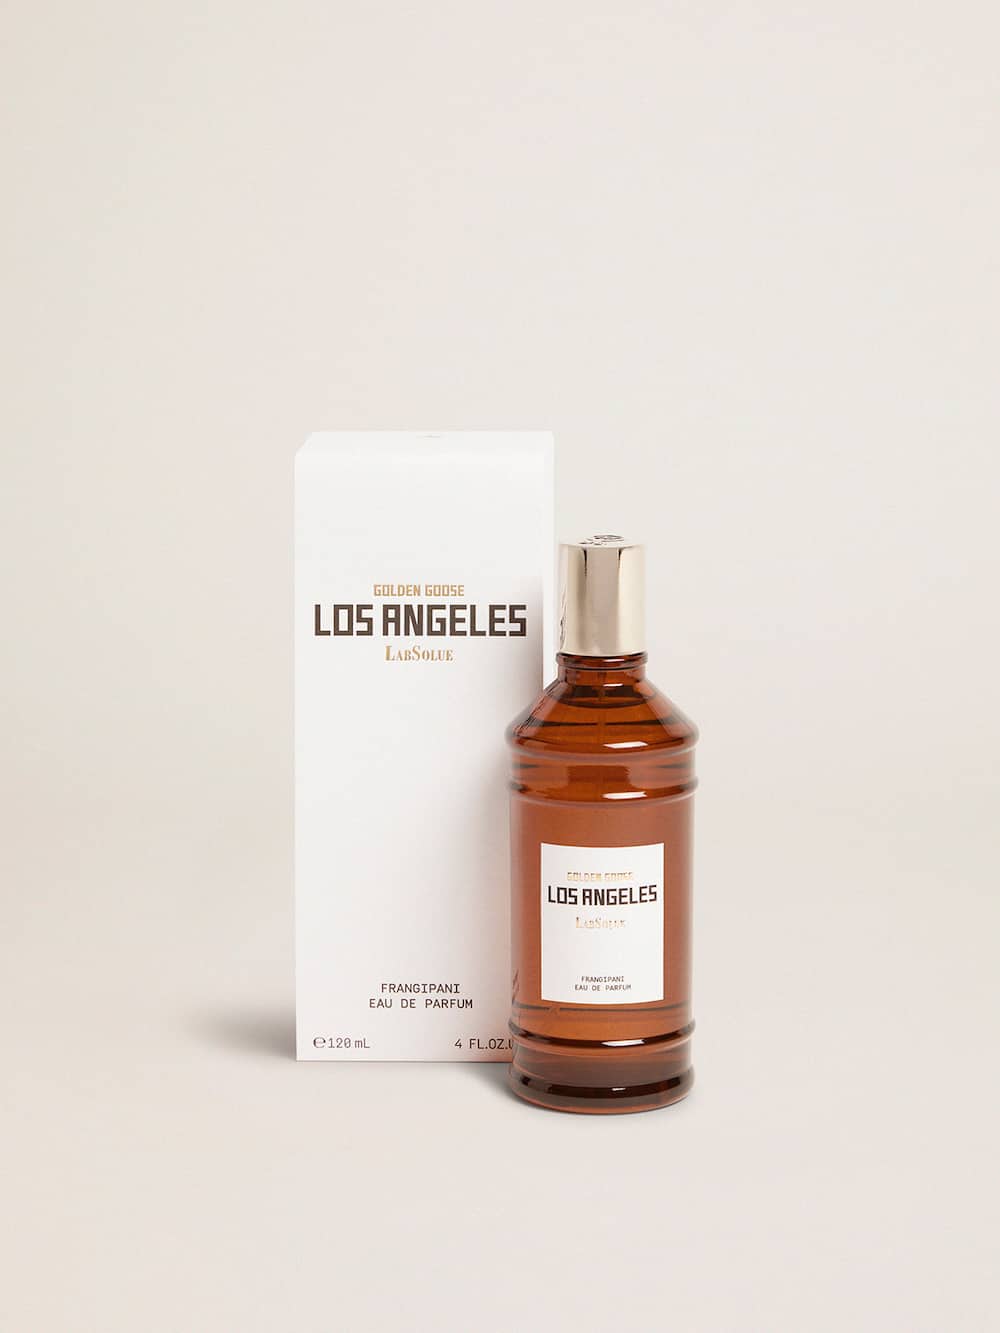 Golden Goose - Los Angeles Essence Frangipane Eau de Parfum 120 ml in 